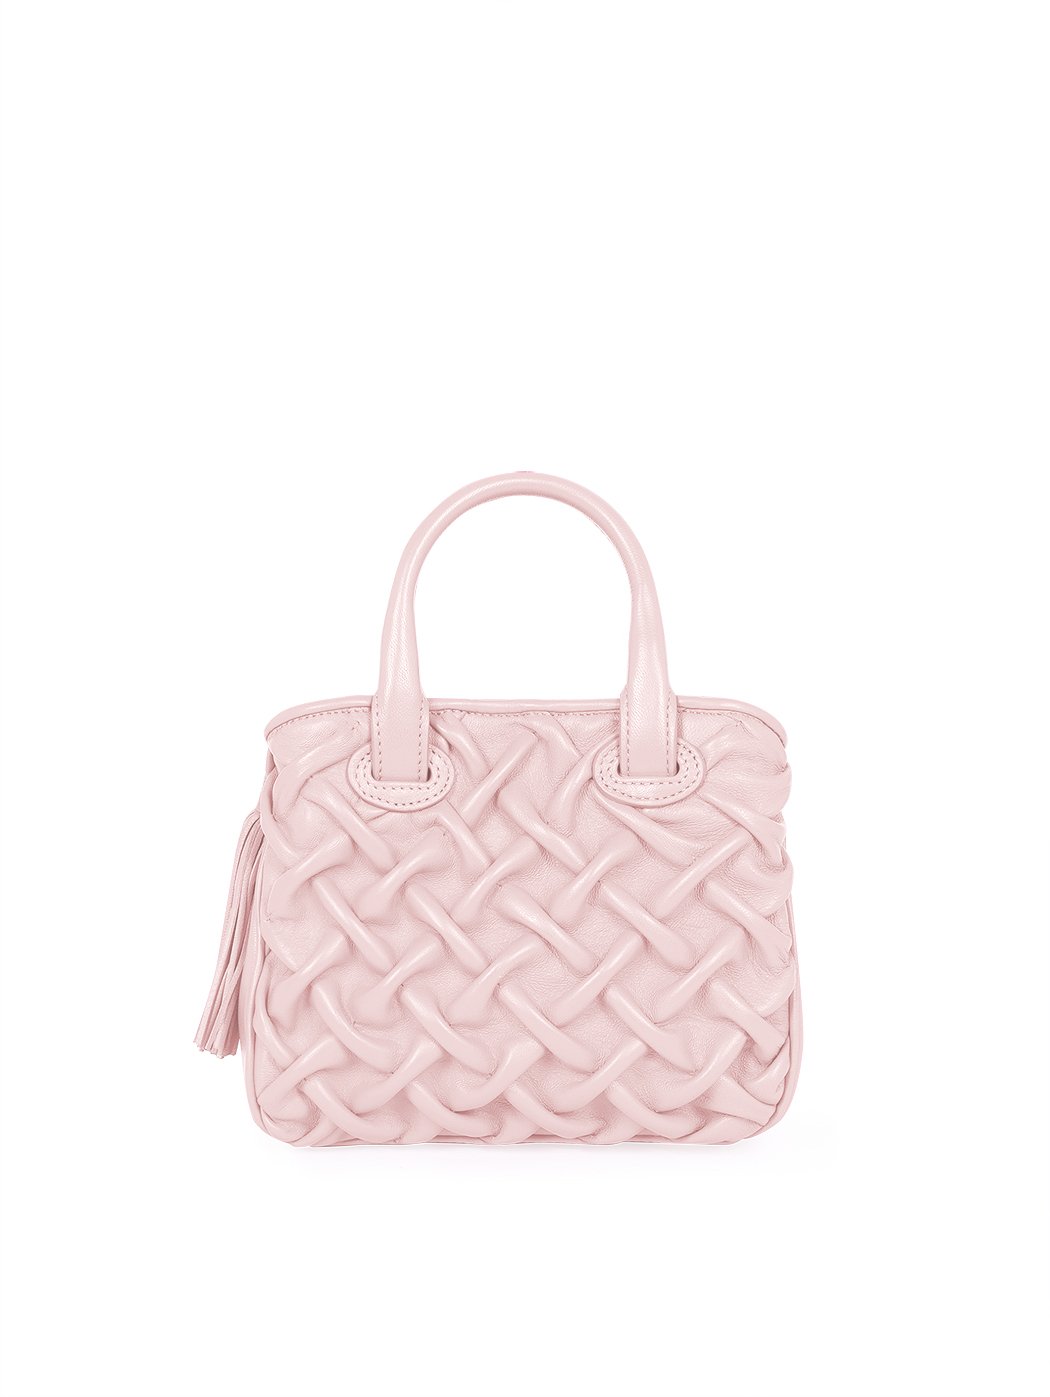 Миниатюрная плиссированная сумочка коллекции Poseidon розового цвета